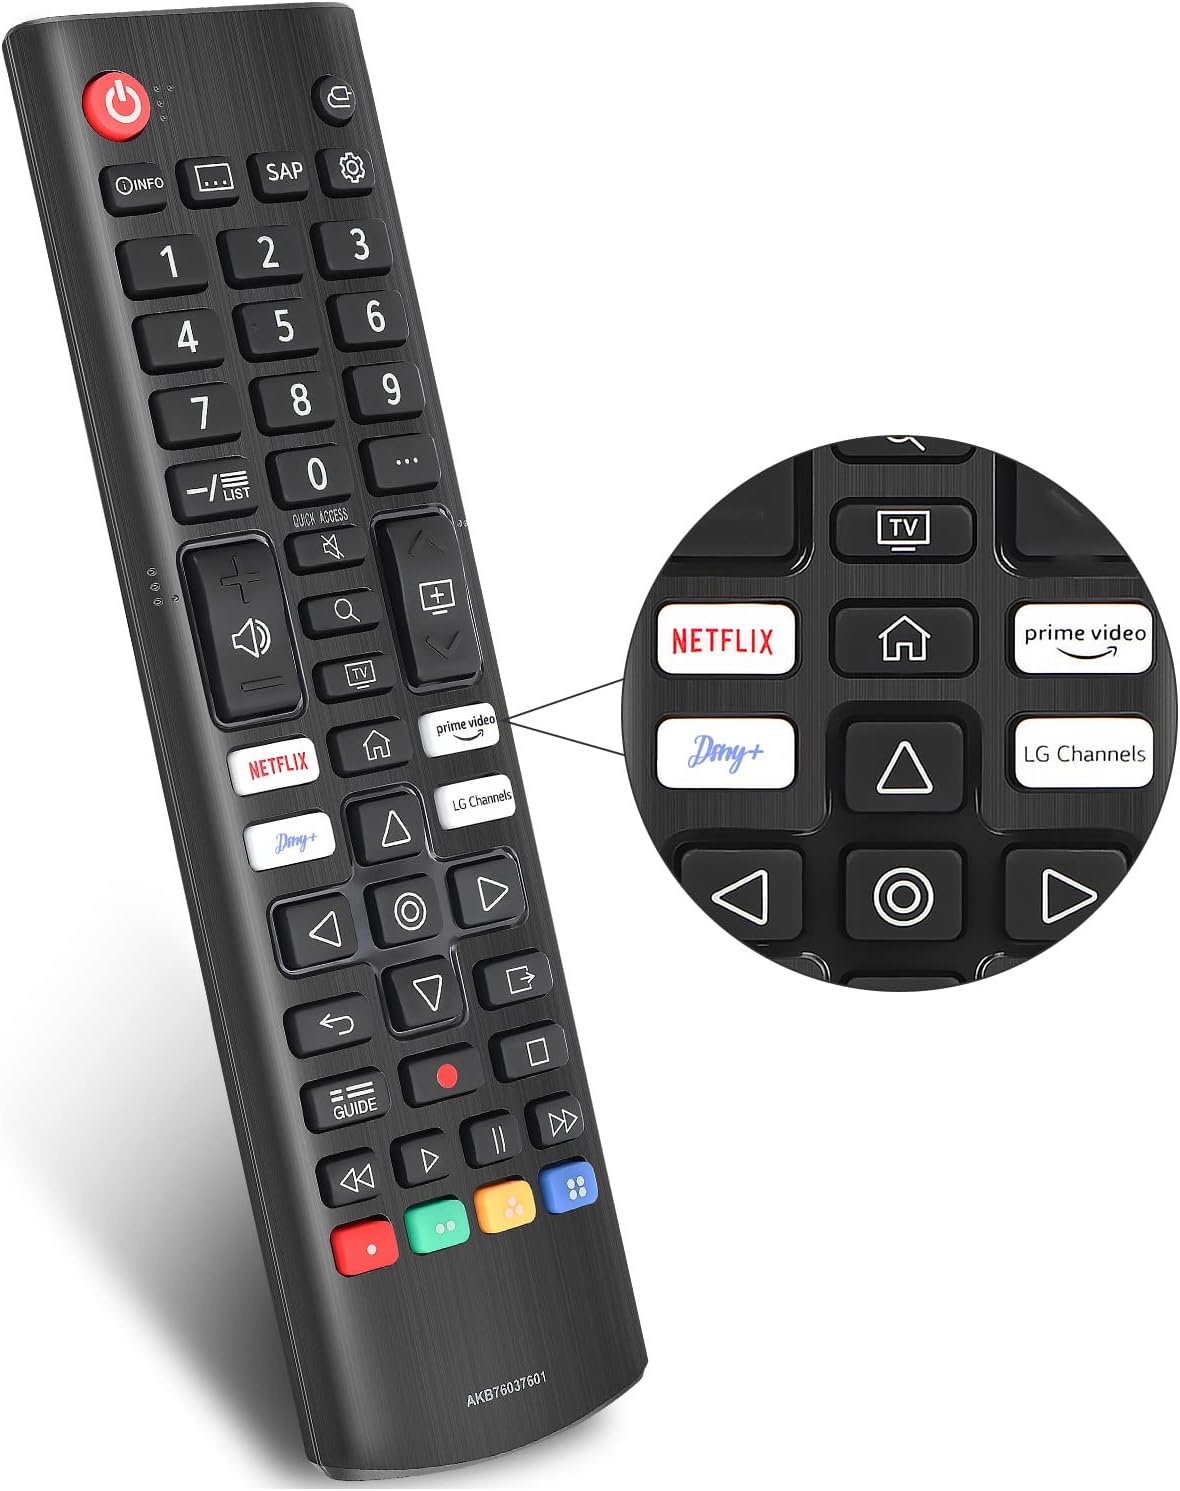 Remote Control for LG Smart TV AKB76037605 - Black